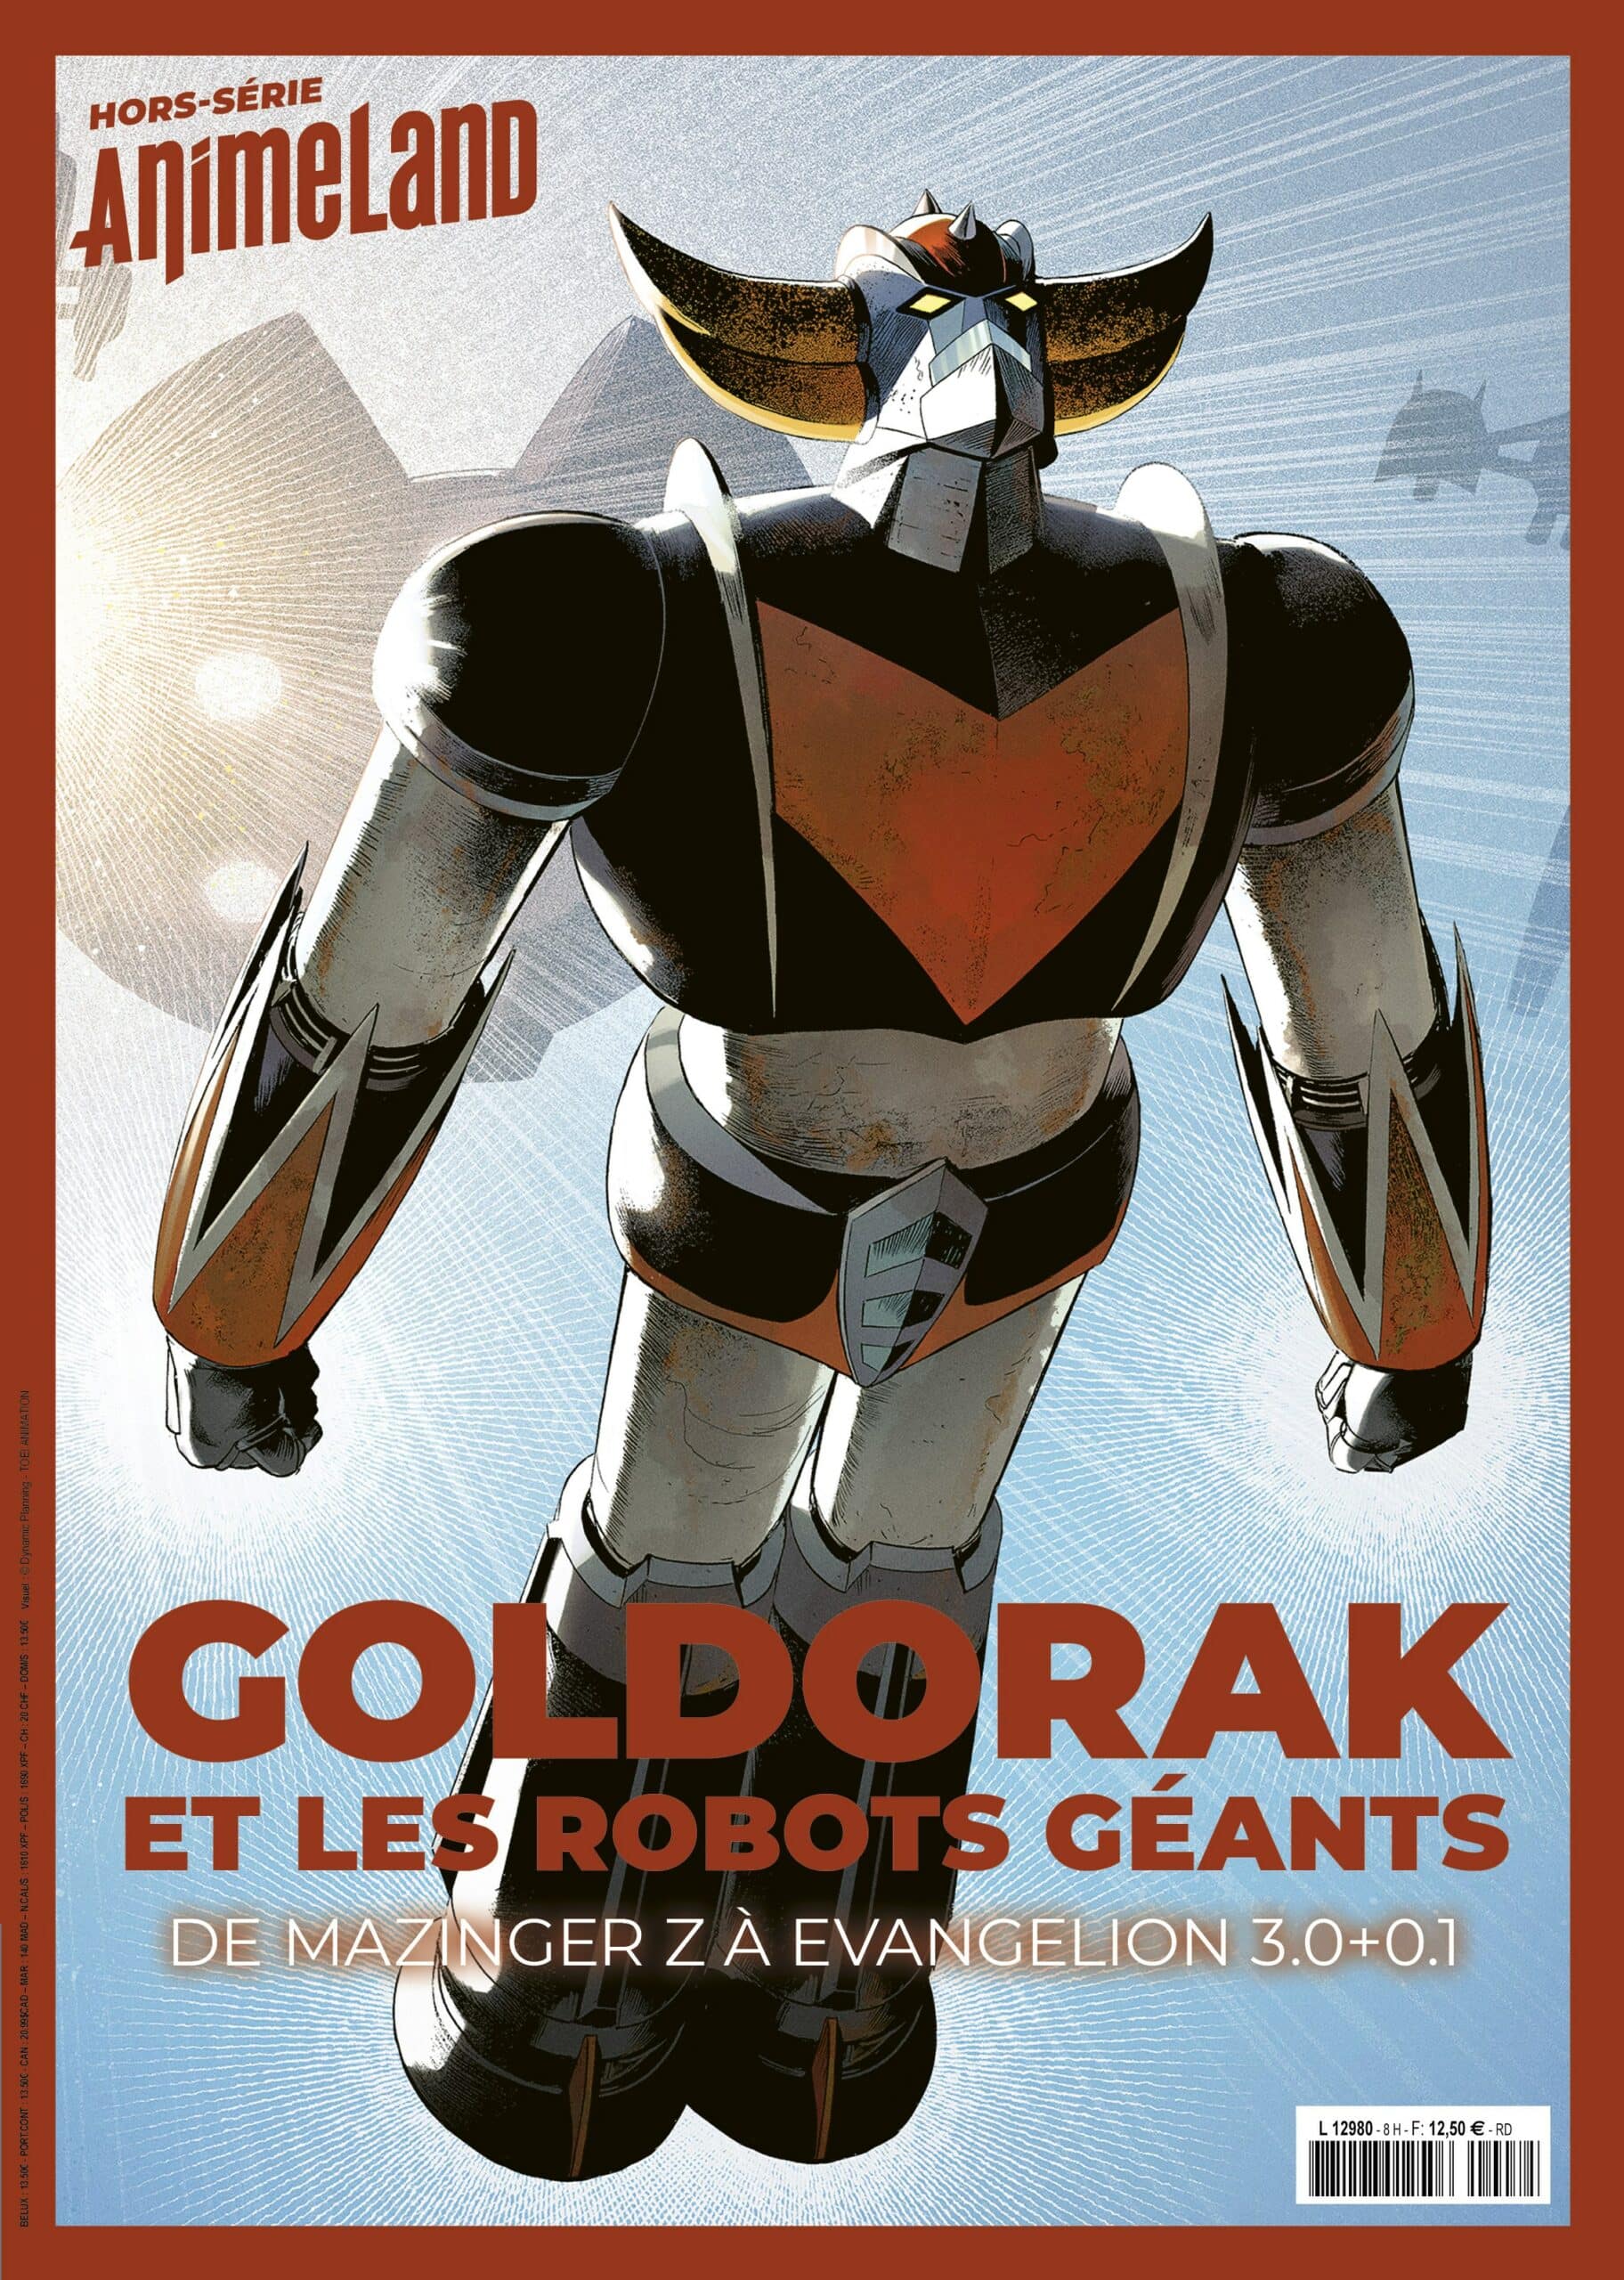 GOLDORAK ET LES ROBOTS GEANTS